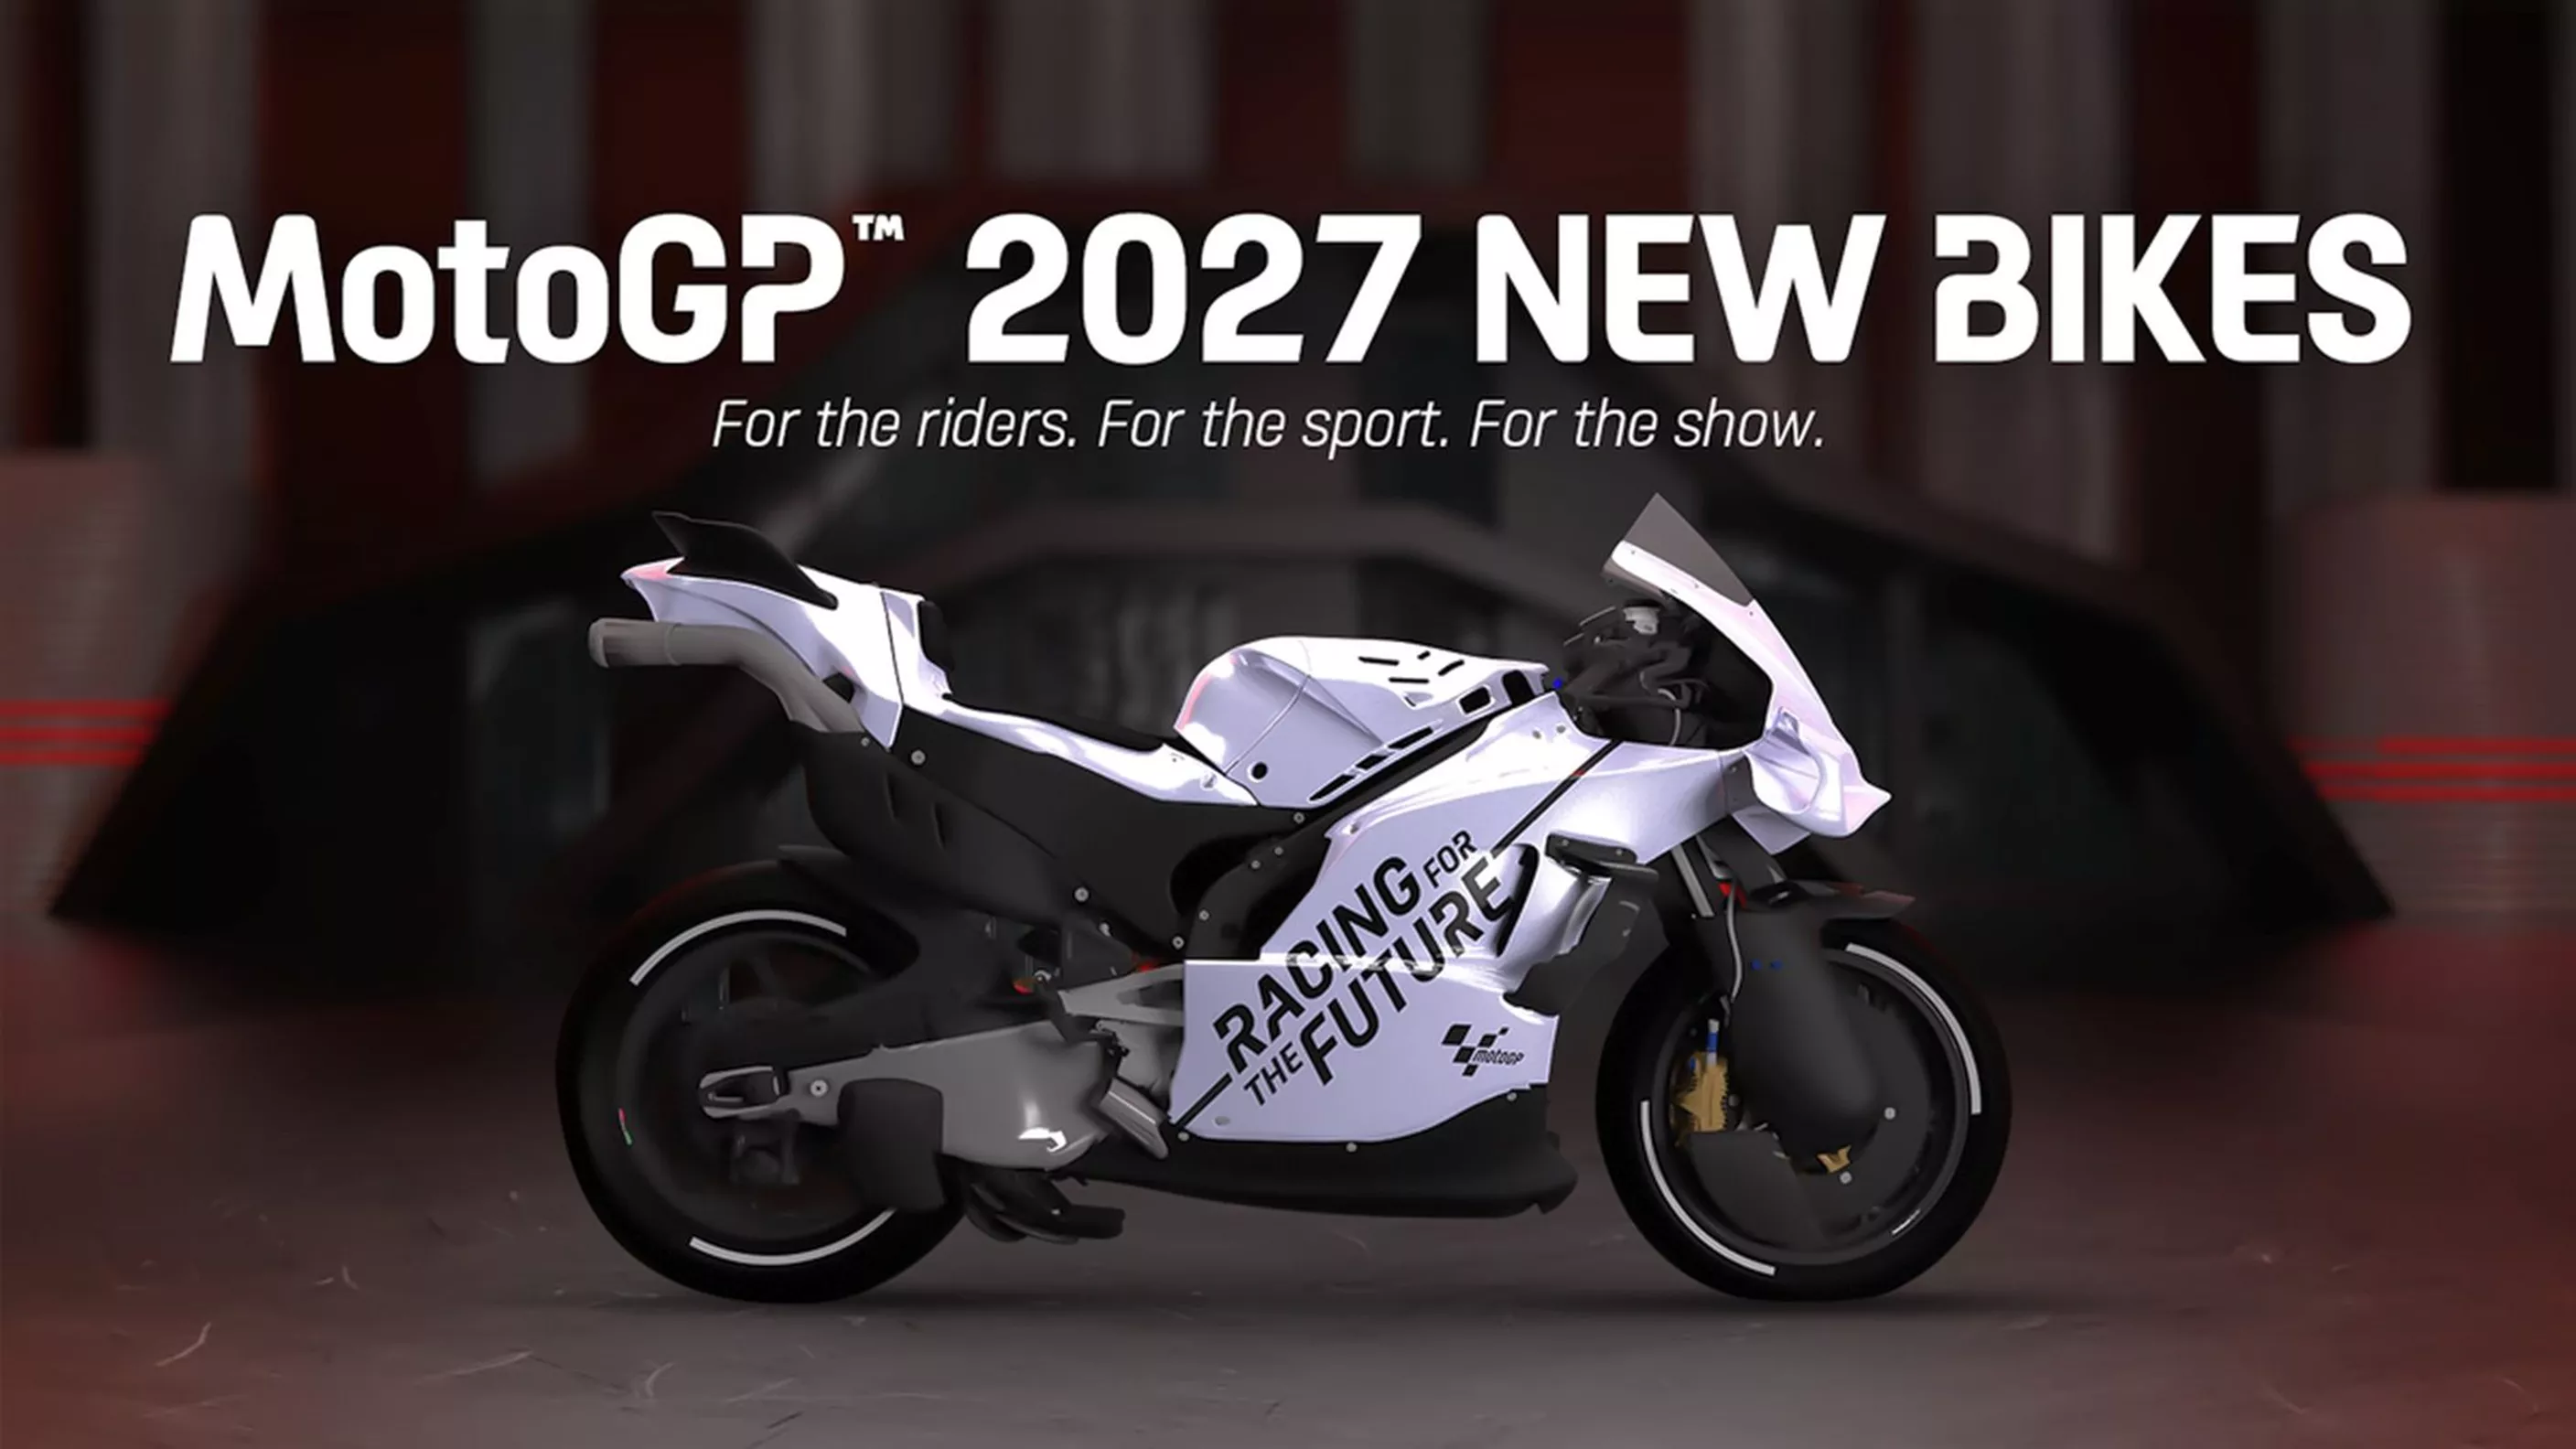 Przepisy MotoGP 2027 - Mniejsza pojemność skokowa, brak wysokości jazdy